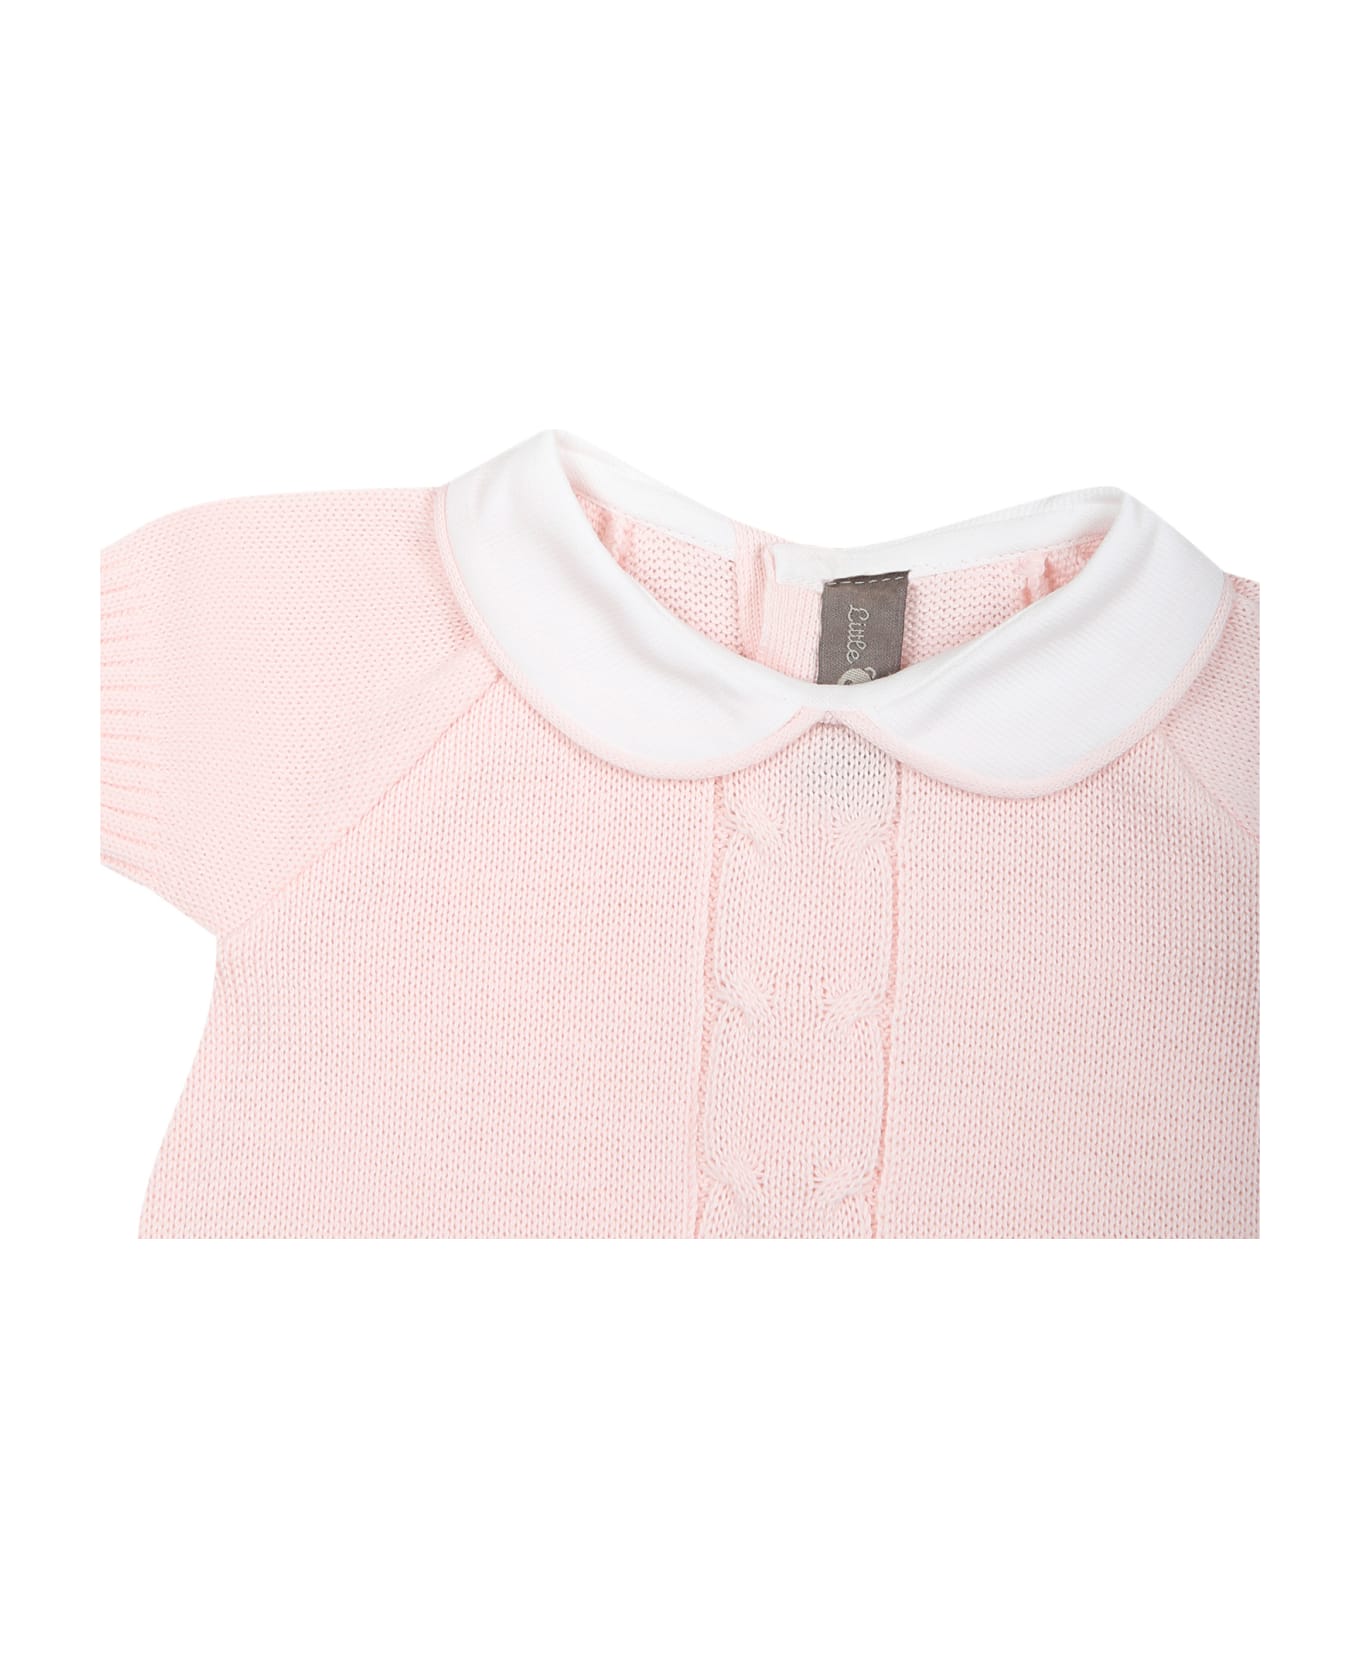 Little Bear Pink Romper For Baby Girl - Rosa